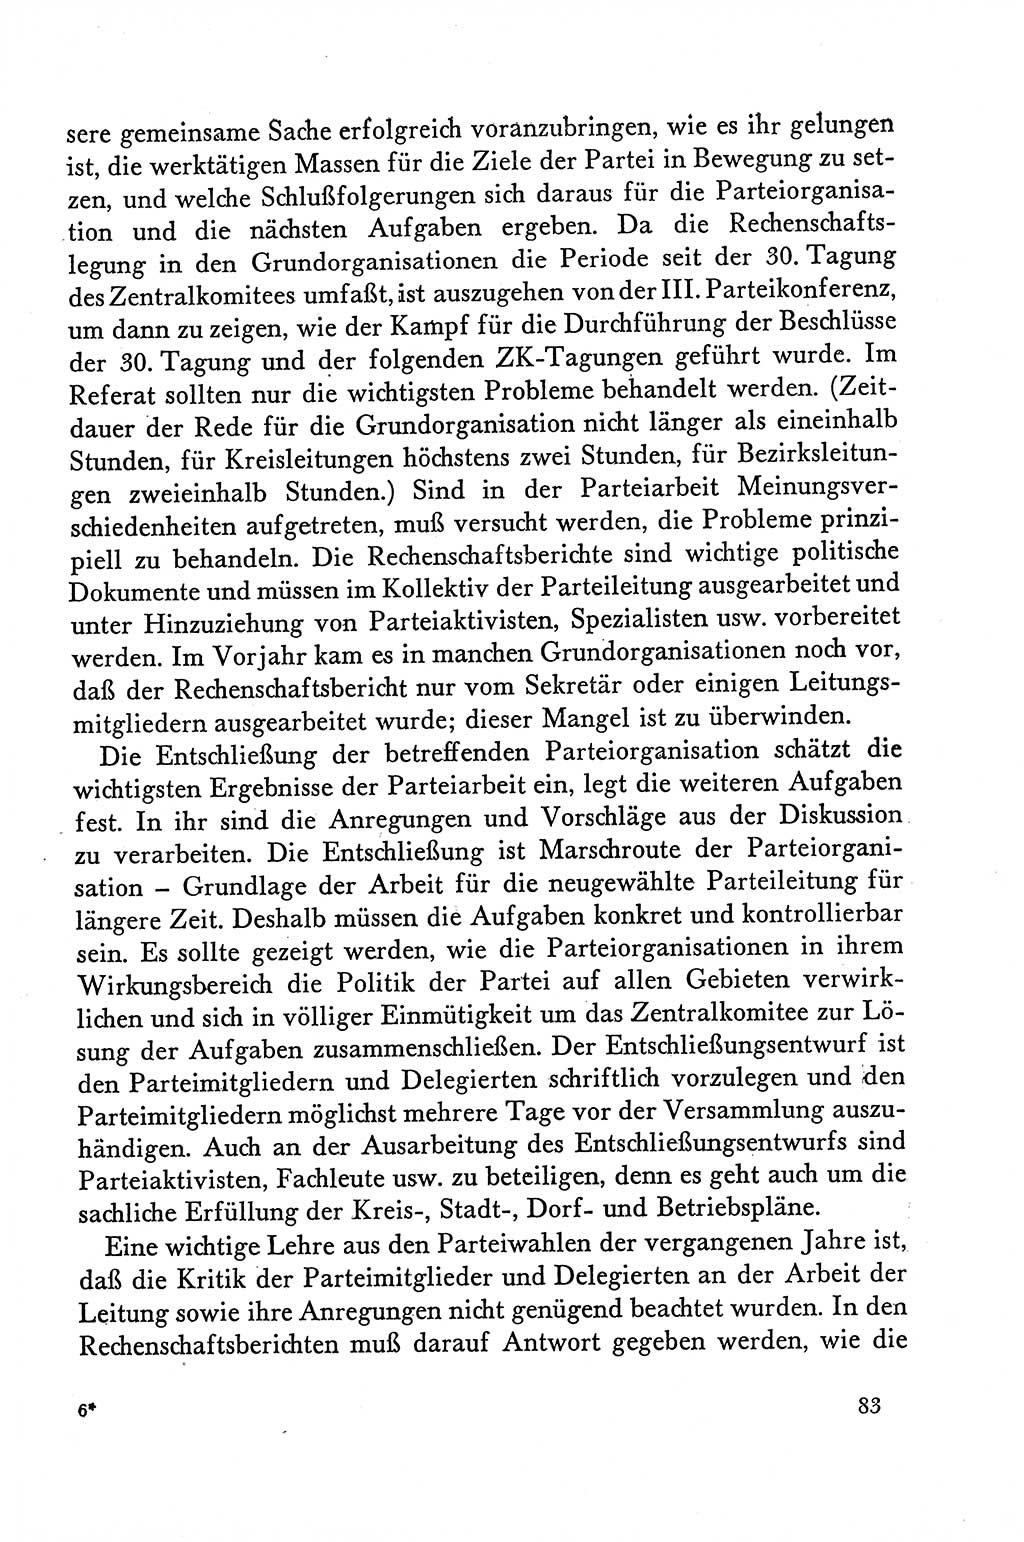 Dokumente der Sozialistischen Einheitspartei Deutschlands (SED) [Deutsche Demokratische Republik (DDR)] 1958-1959, Seite 83 (Dok. SED DDR 1958-1959, S. 83)